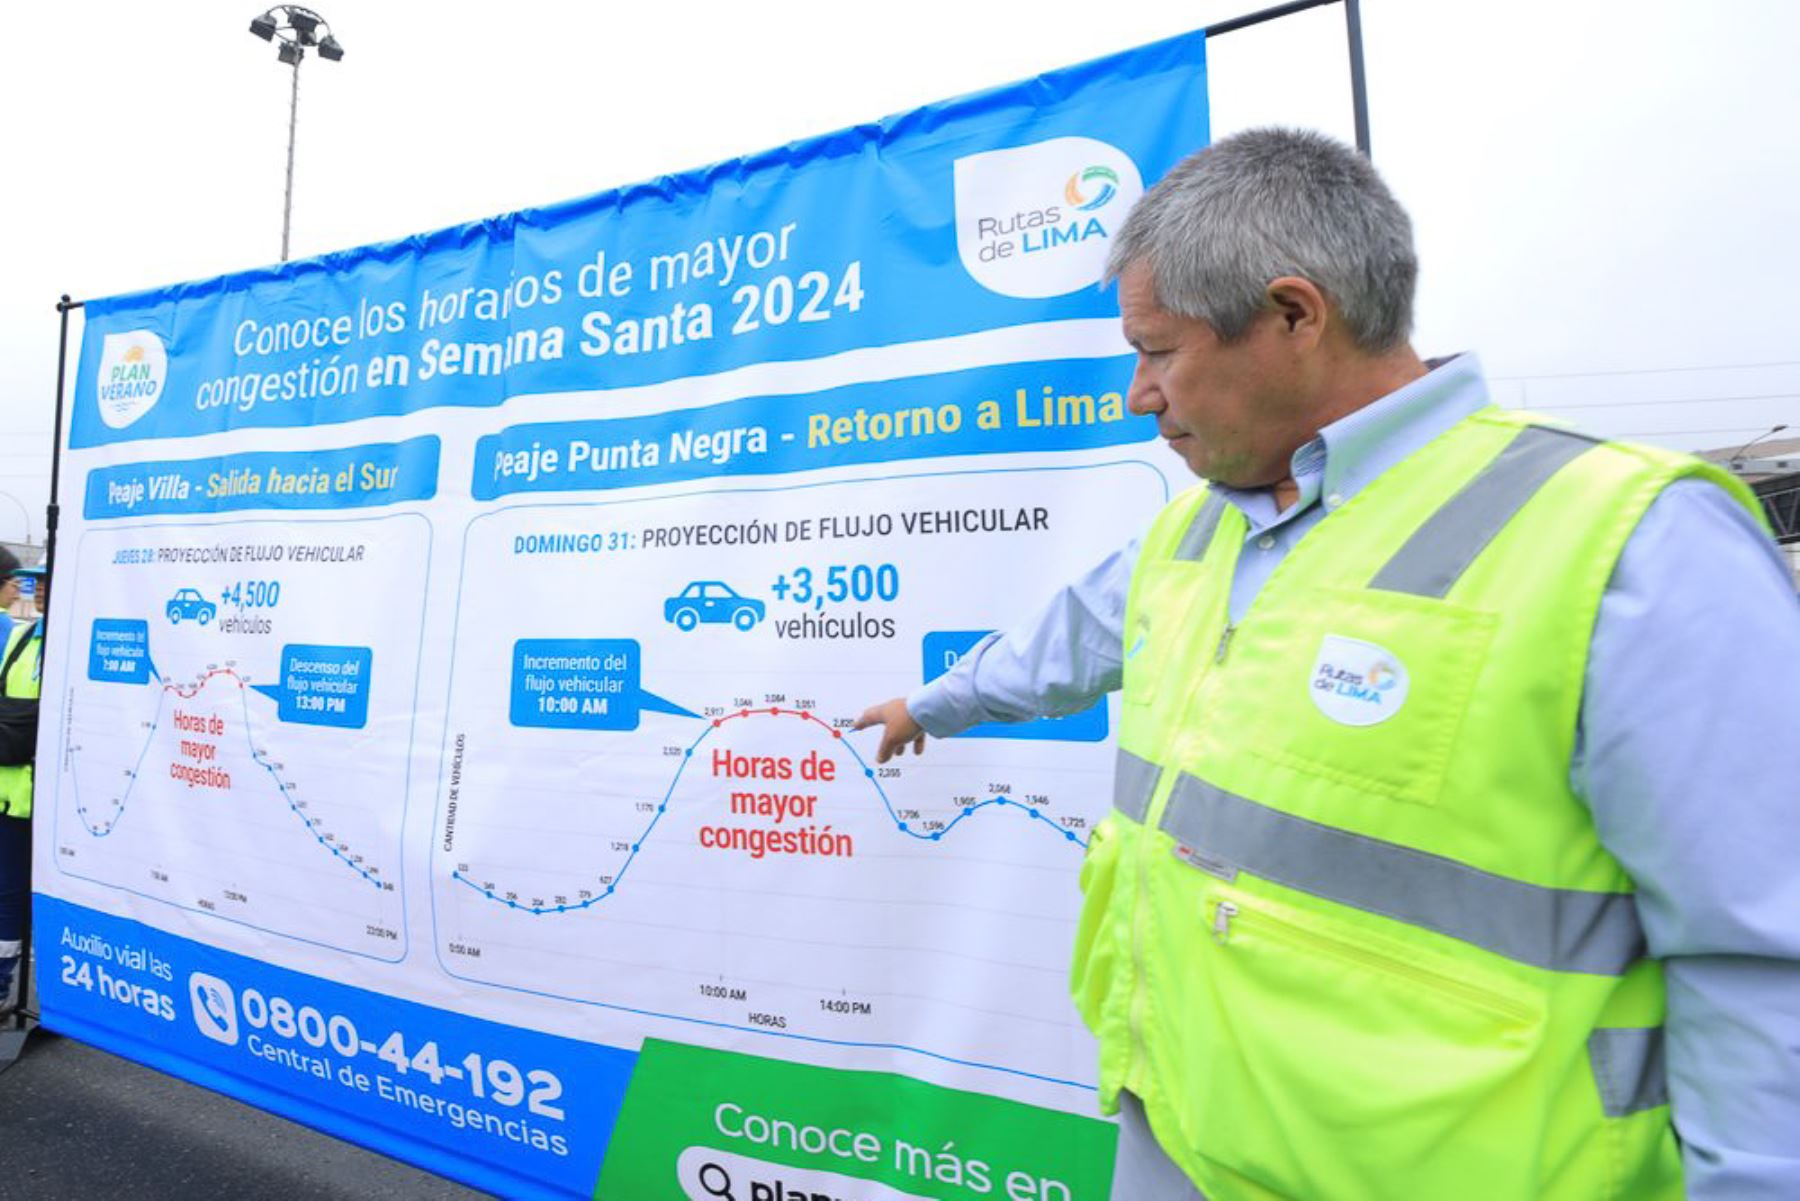 Rutas de Lima aconseja evitar Panamericana Sur entre las 07:00 y 13:00 horas. Foto: ANDINA/difusión.